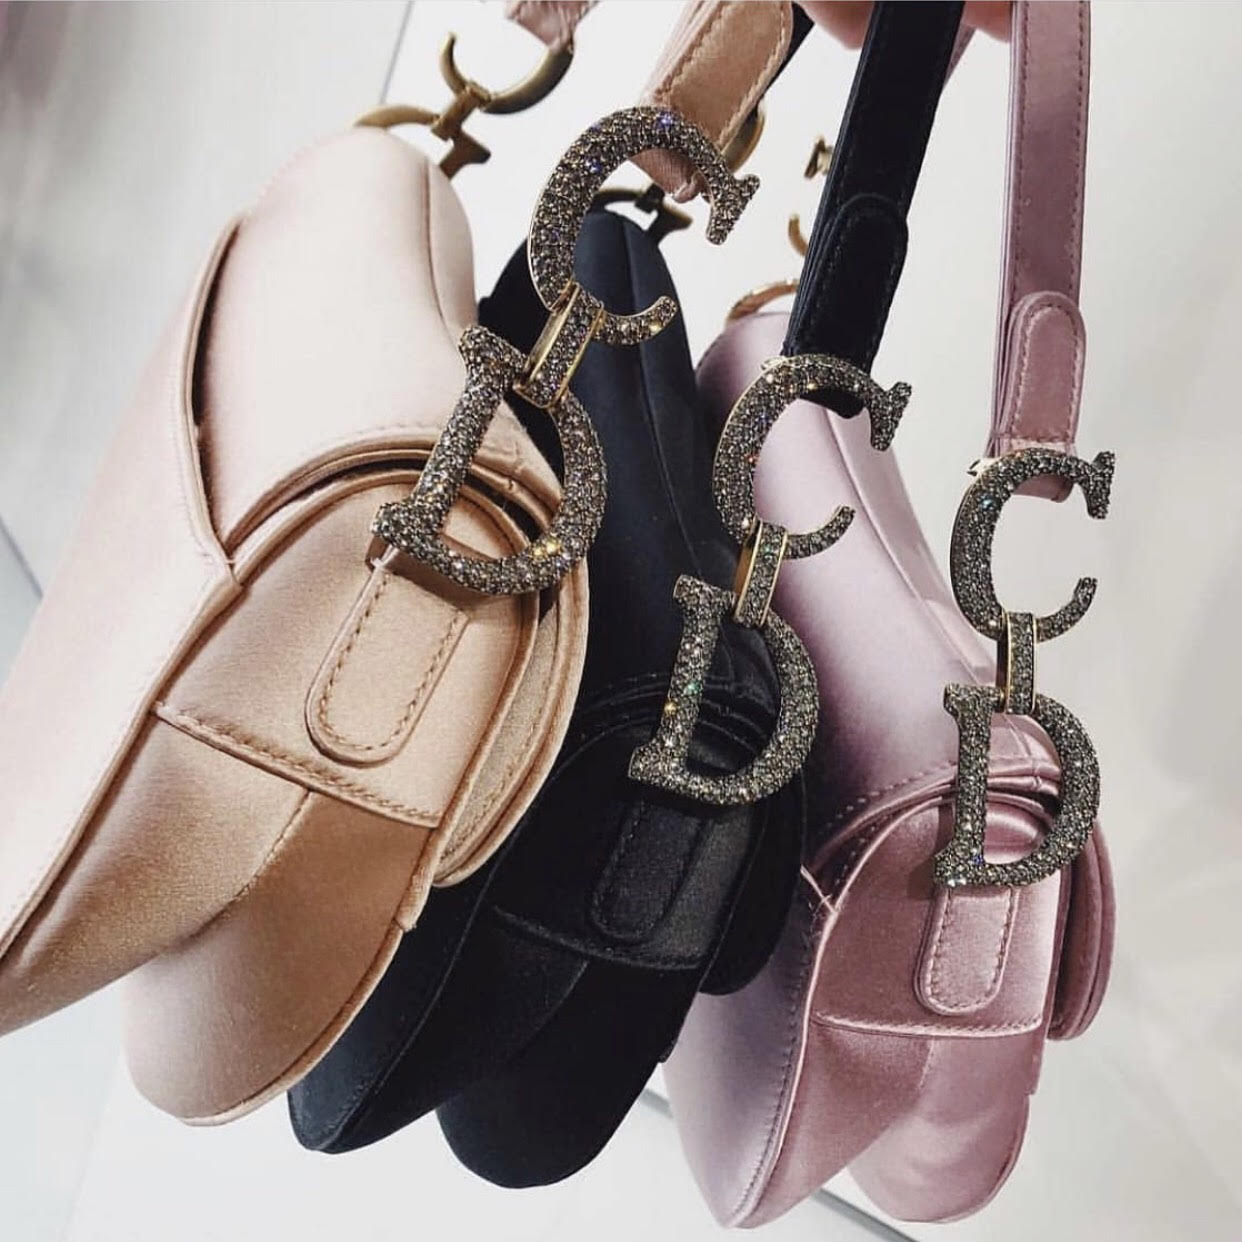 dior saddle bag buy online